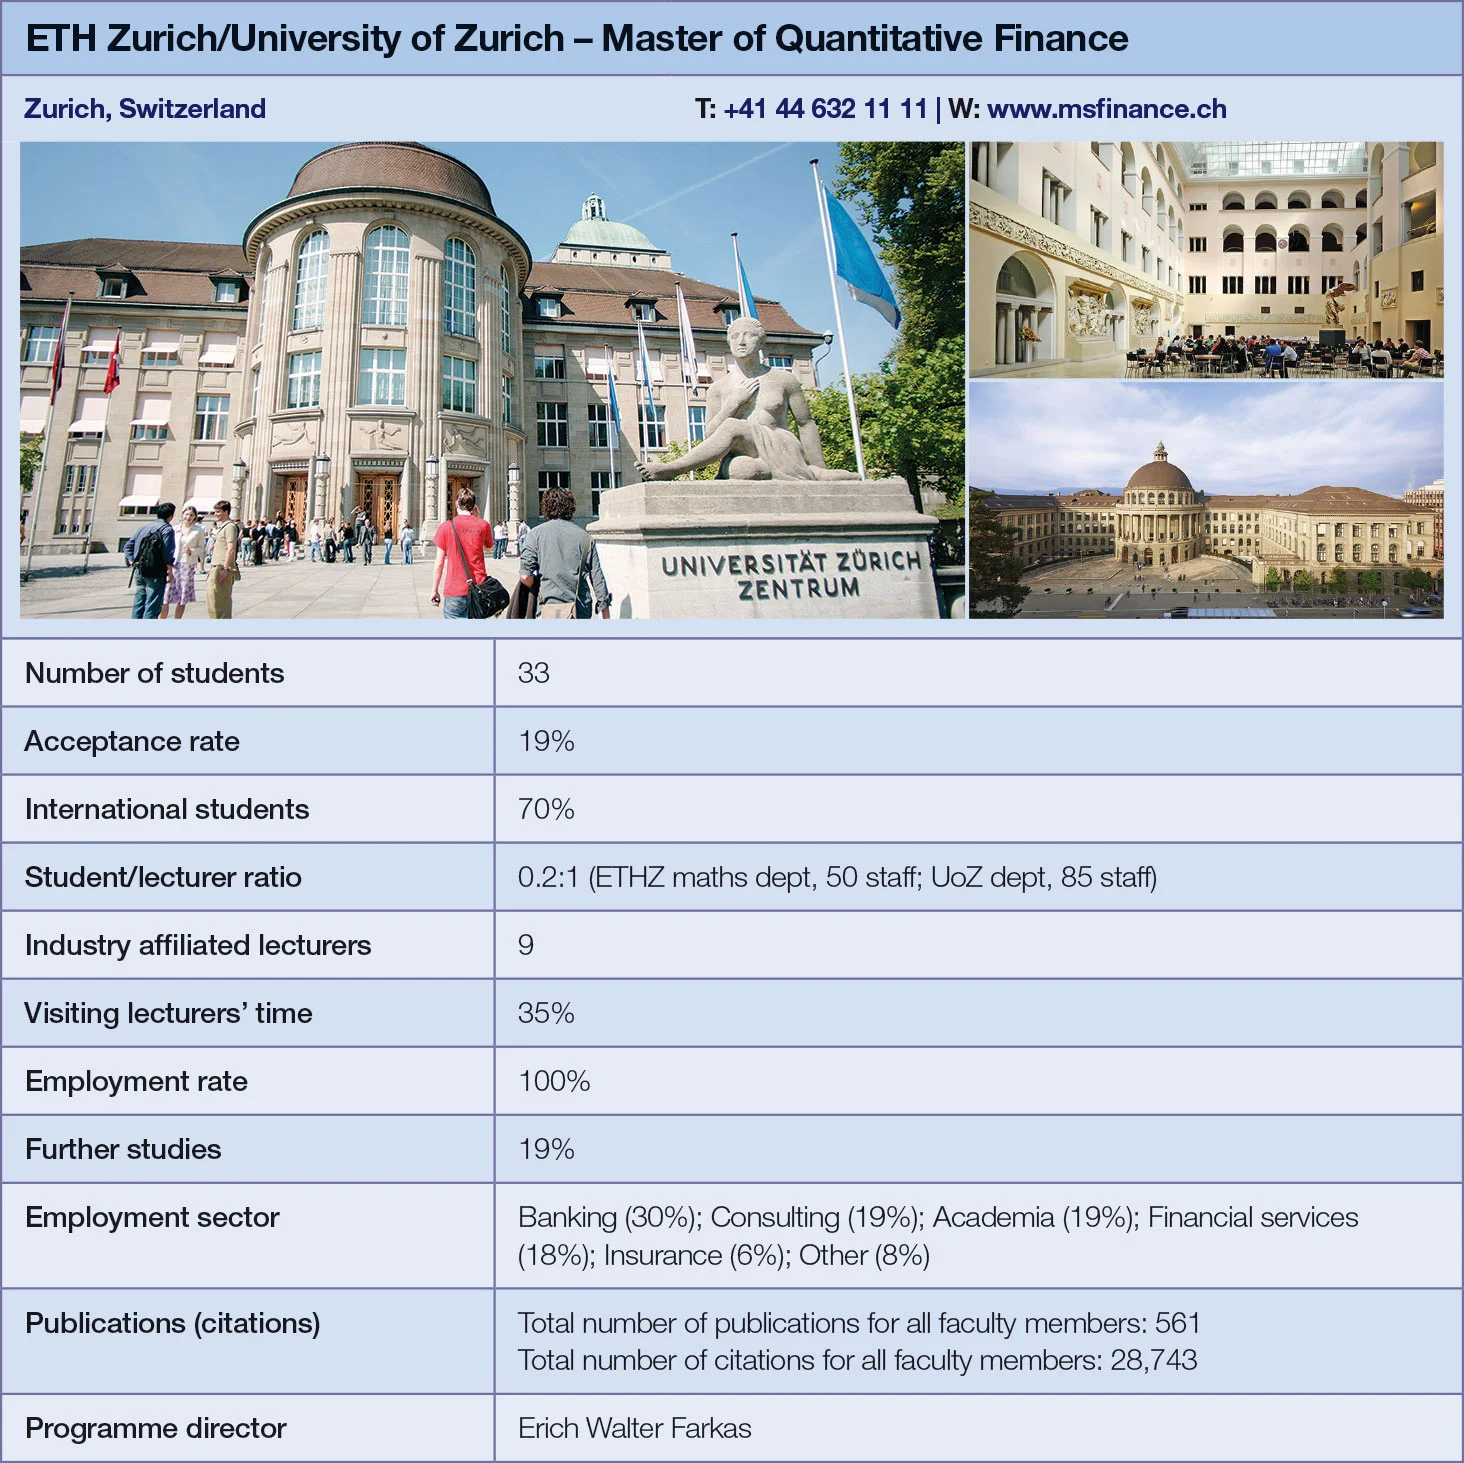 ETH Zurich/University of Zurich metrics